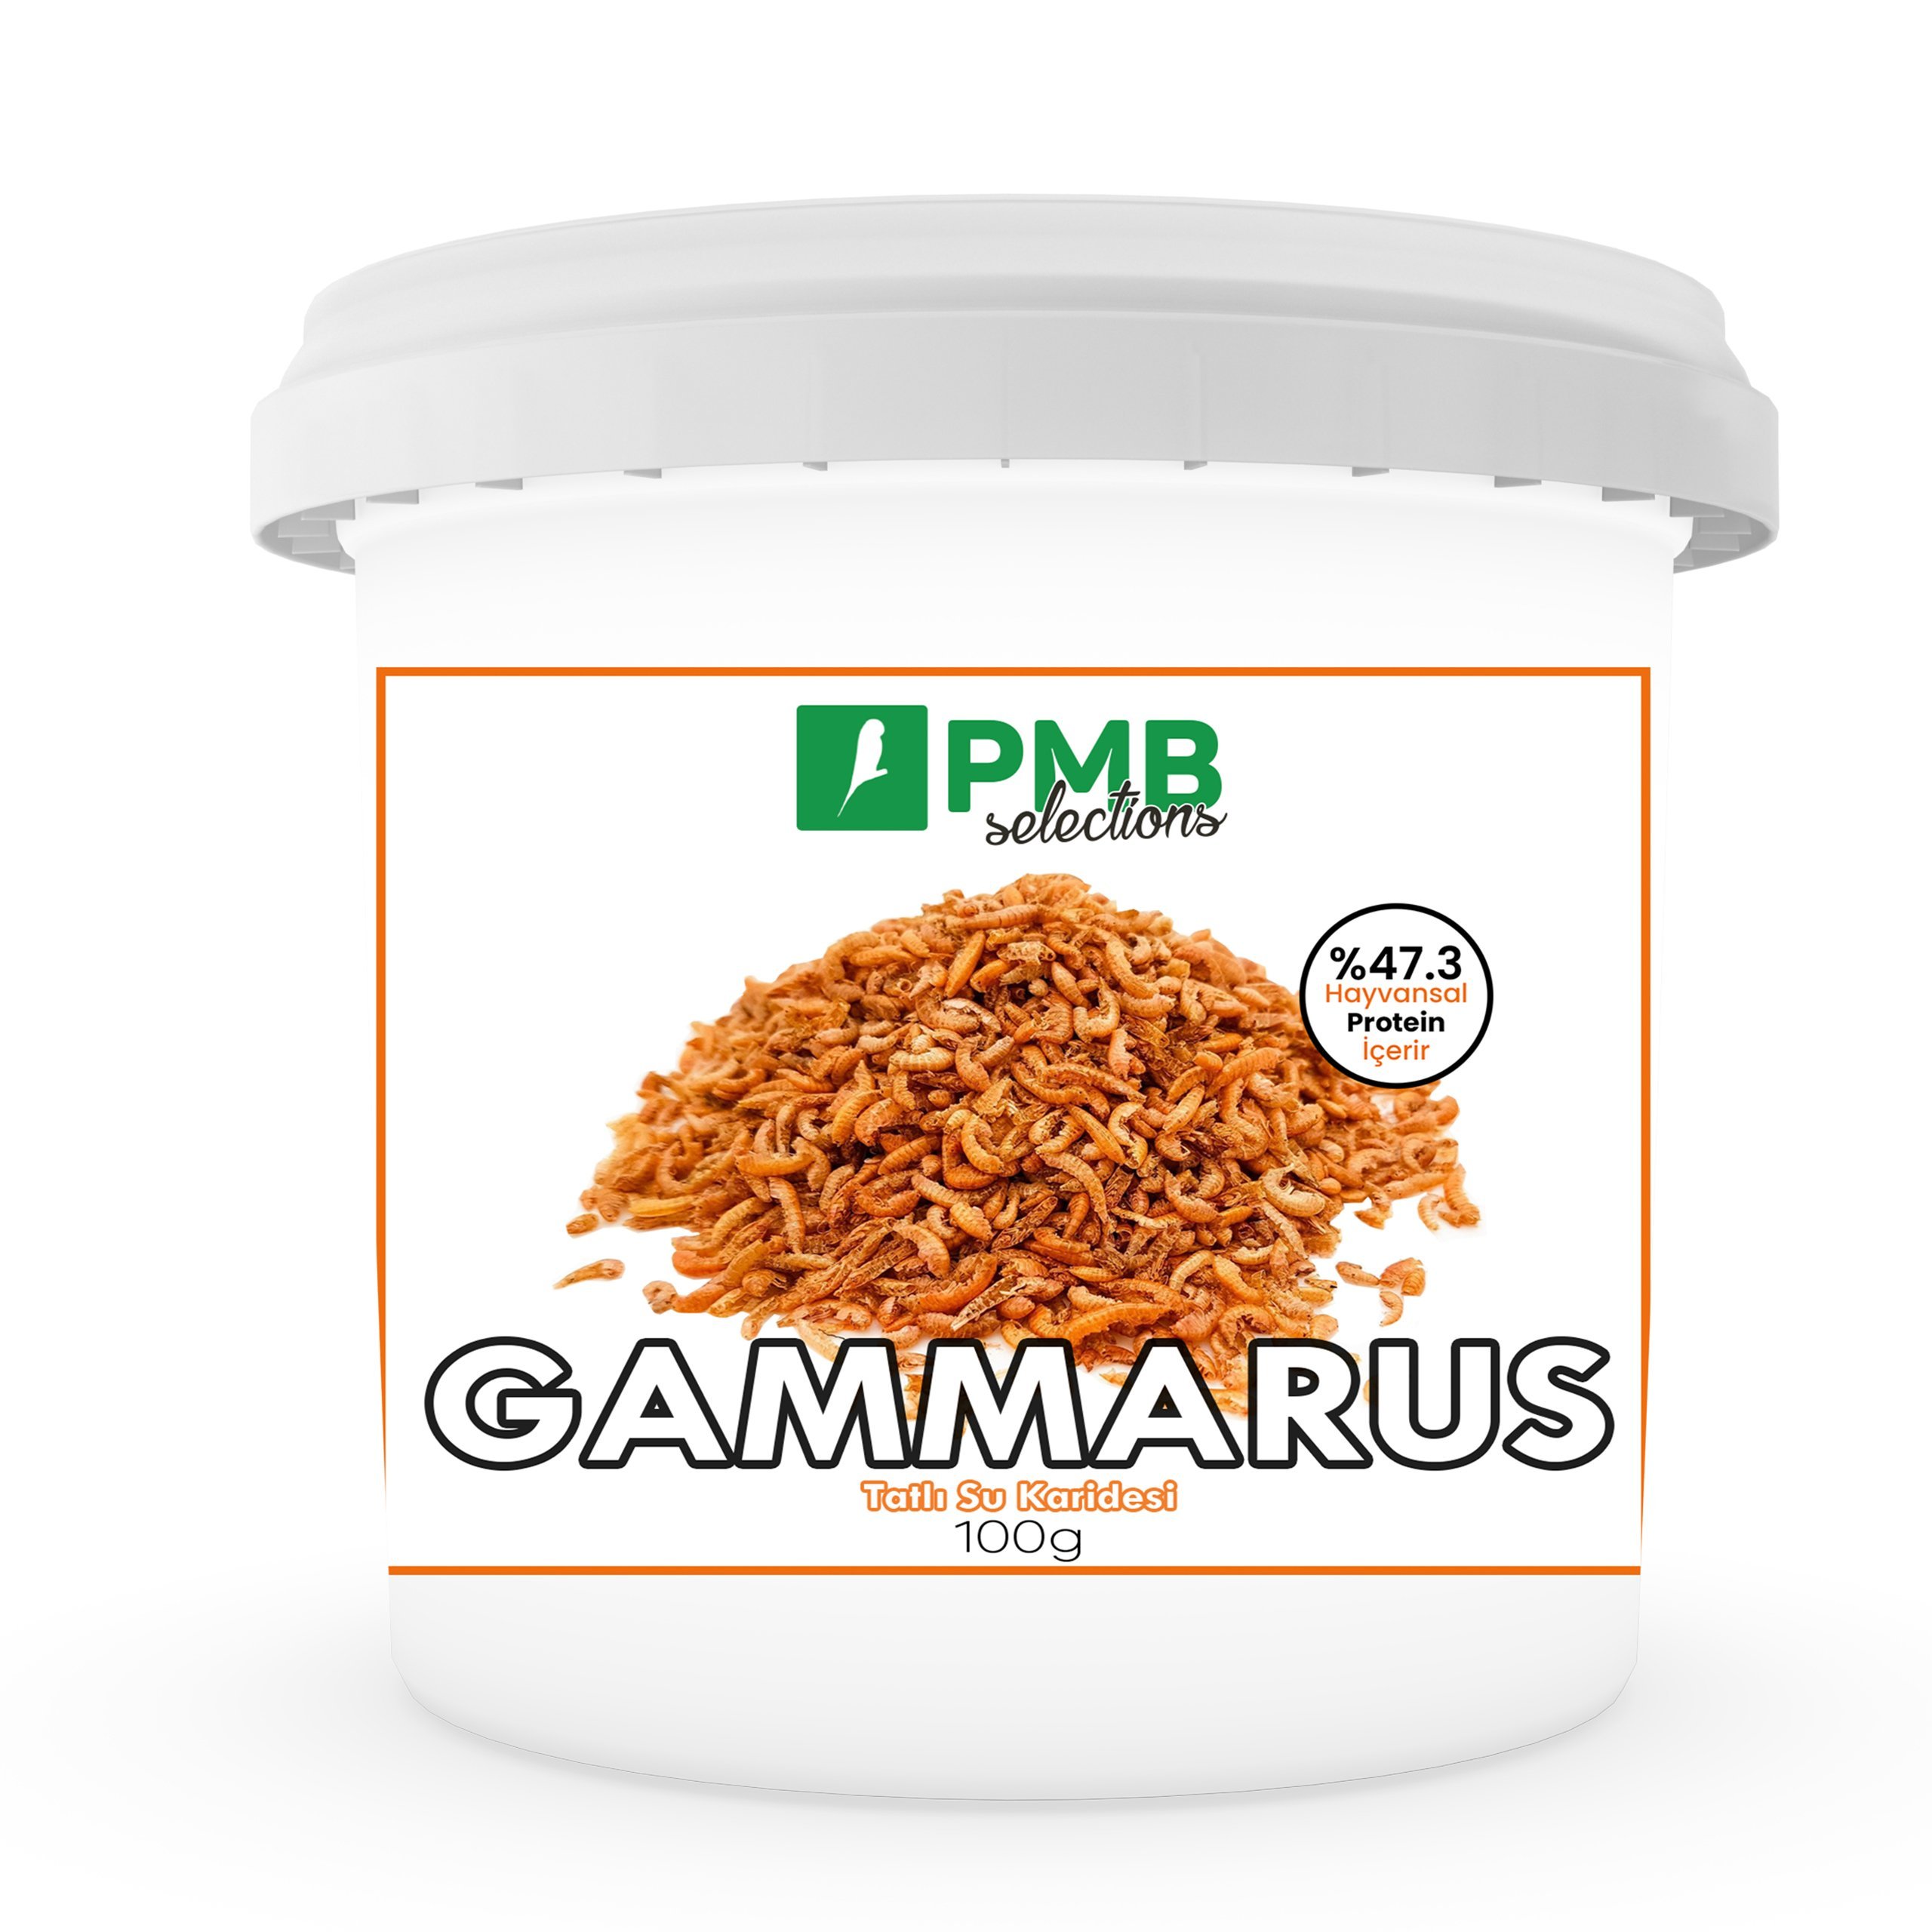 PMB Selections Gammarus Tatlı Su Karidesi Doğal Hayvansal Protein 100 g